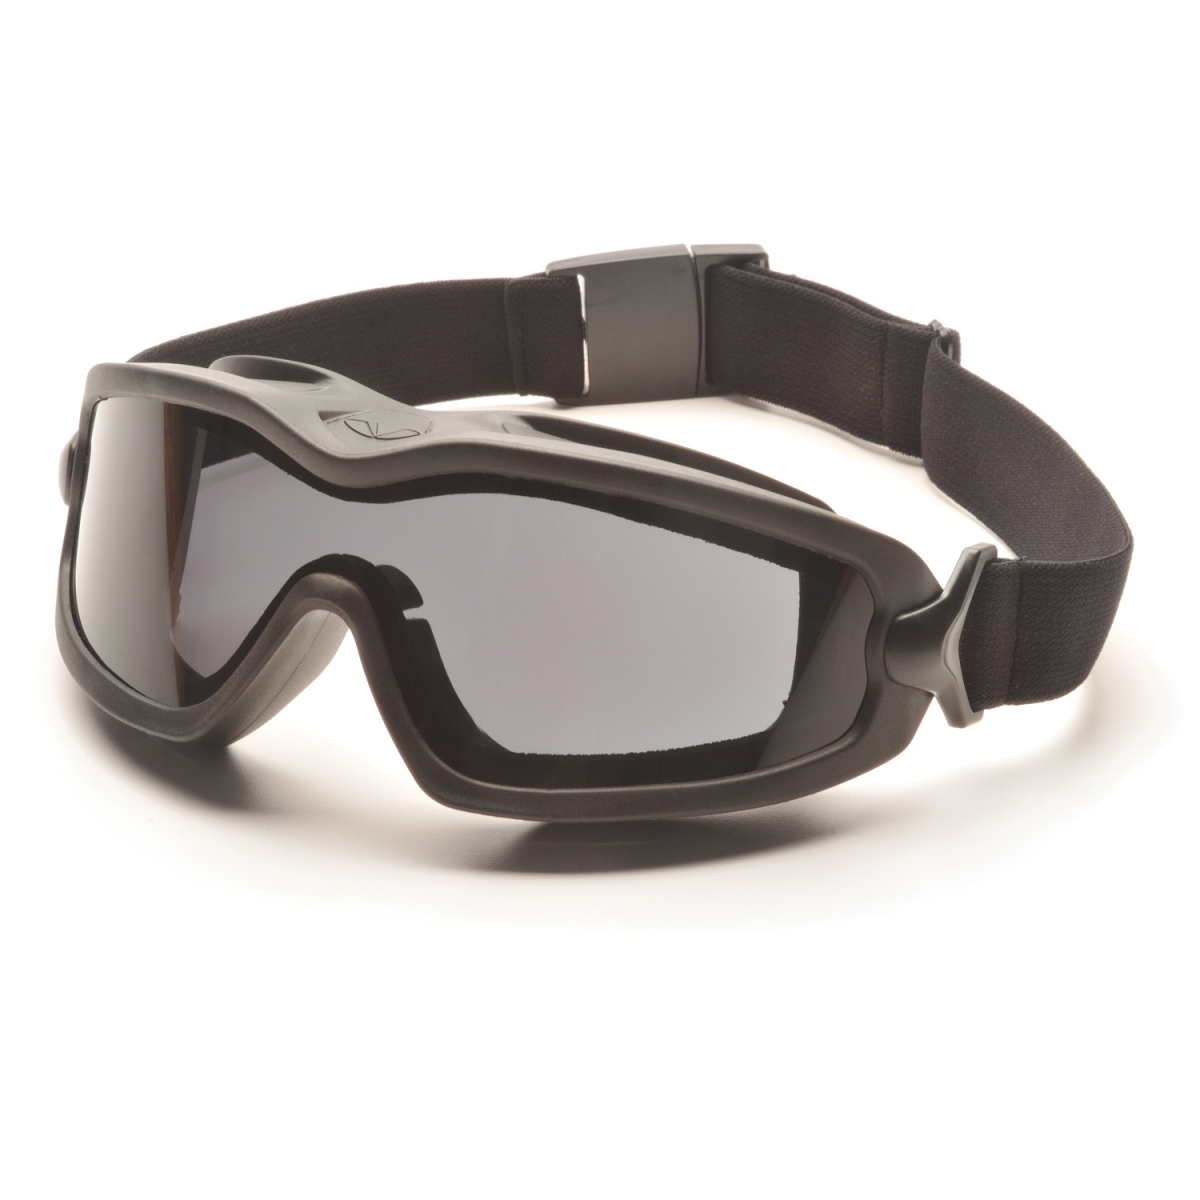 5000121 V2g-plus Goggles Black Strap Gray Dual Af Lens